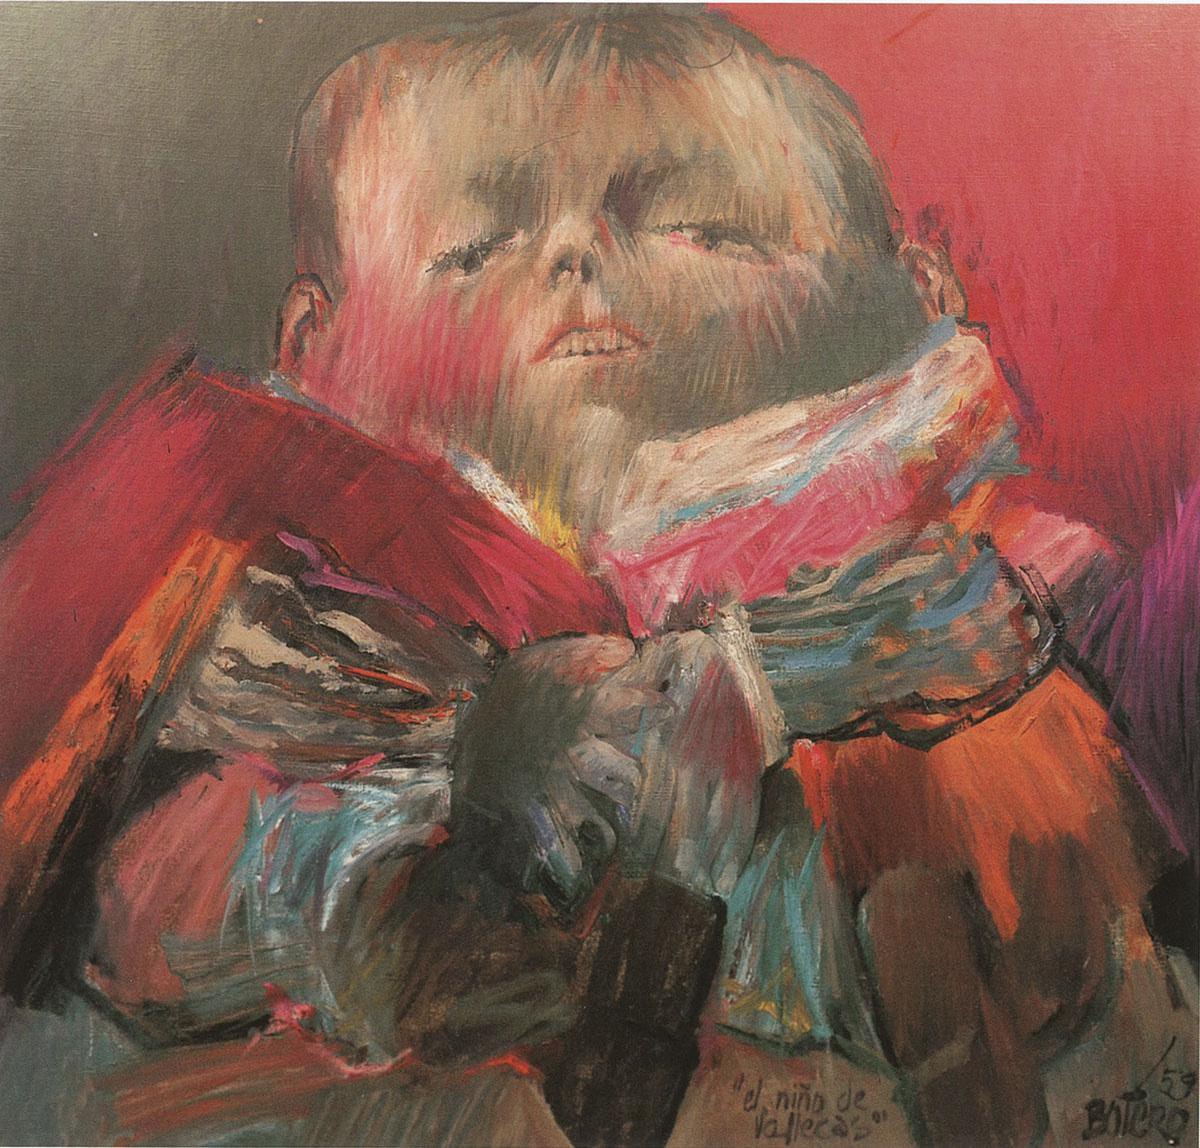 D'après Vélasquez [Francisco Lezcano, l'Enfant de Vallecas], 1959. 